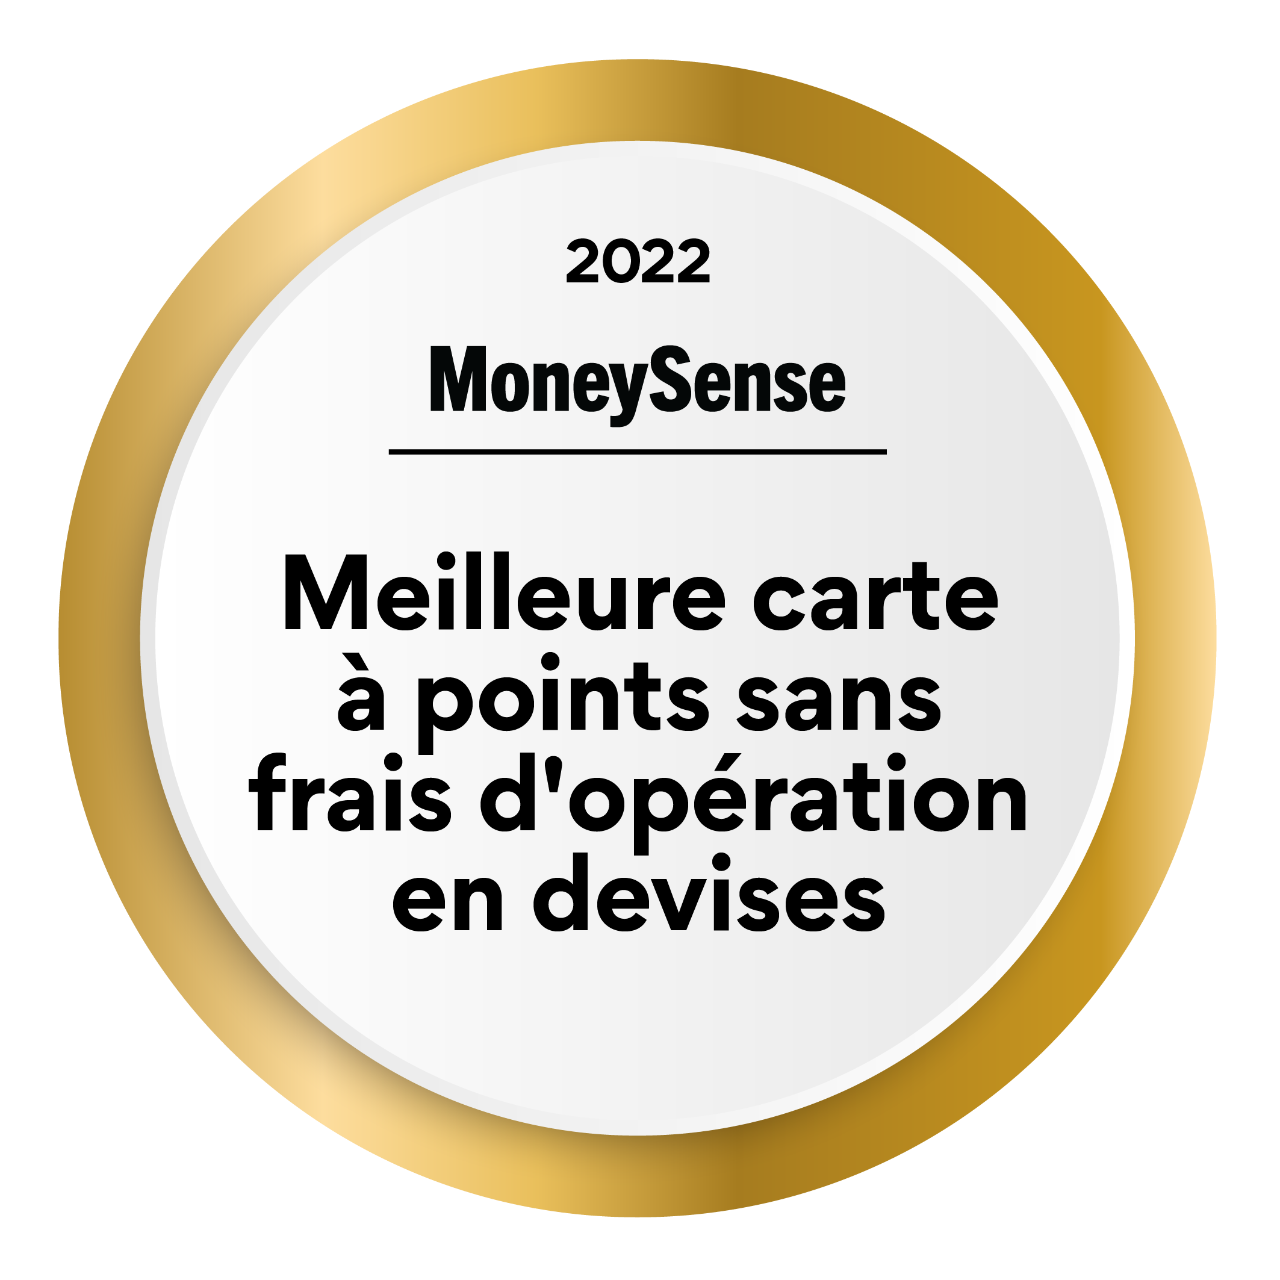  Insigne: Meilleure carte de récompenses (sans frais de change) en 2021, selon MoneySense.